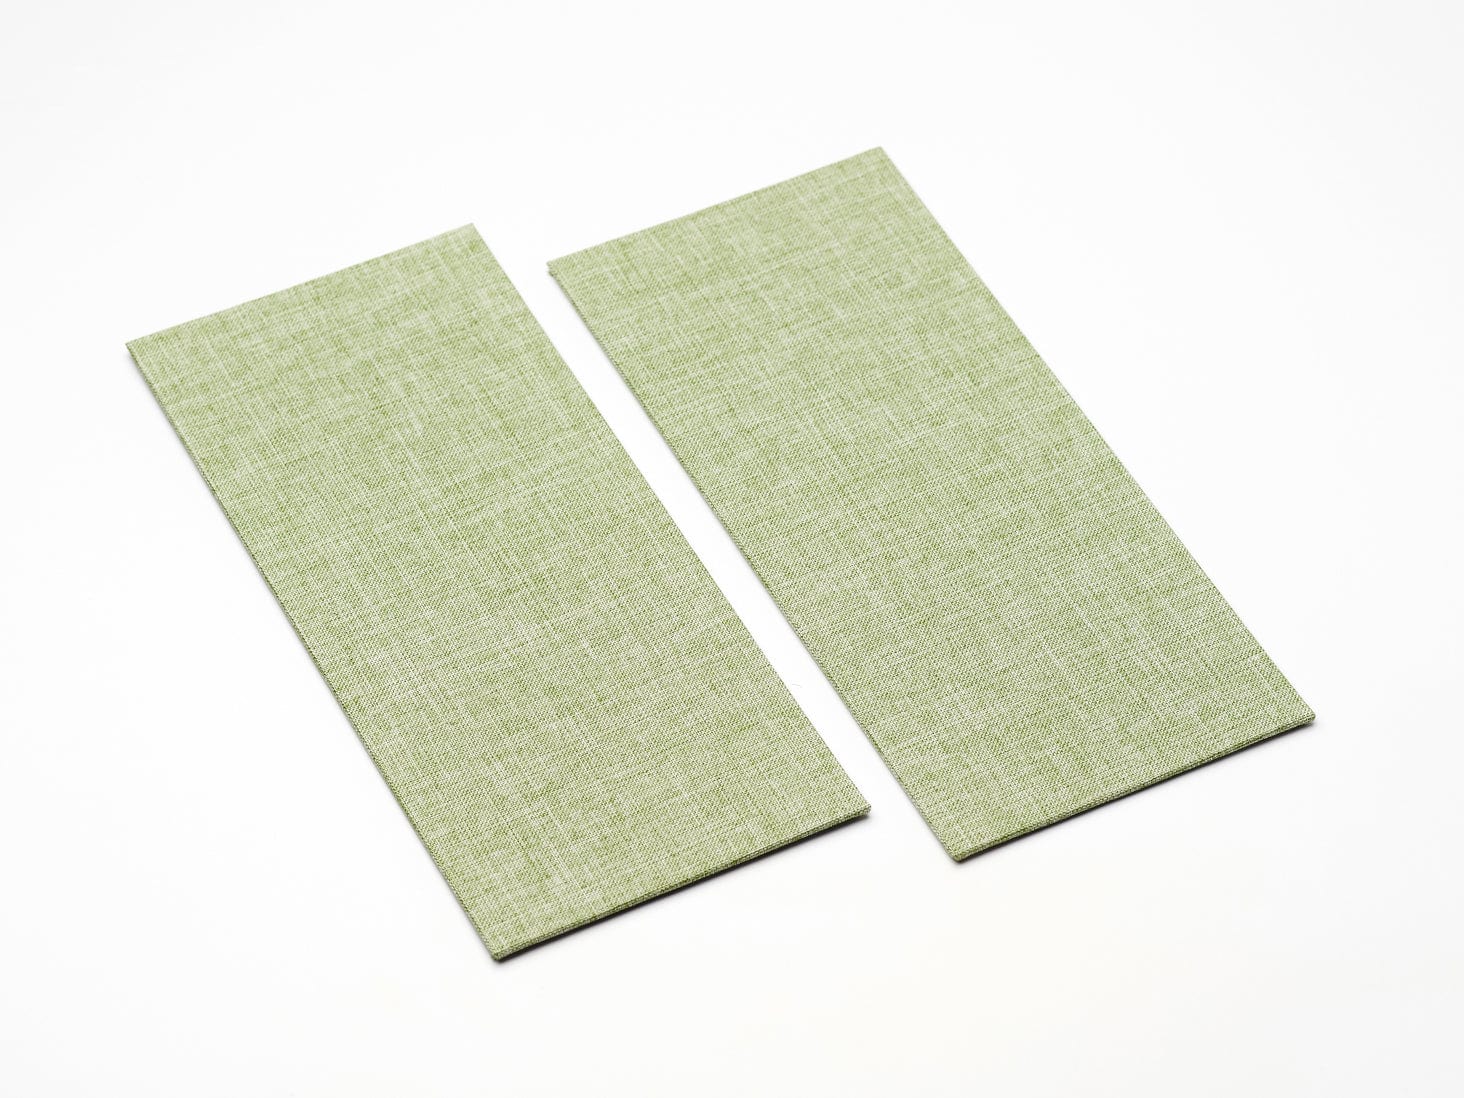 Sage Green Linen Fabric FAB Sides® - A4 Deep